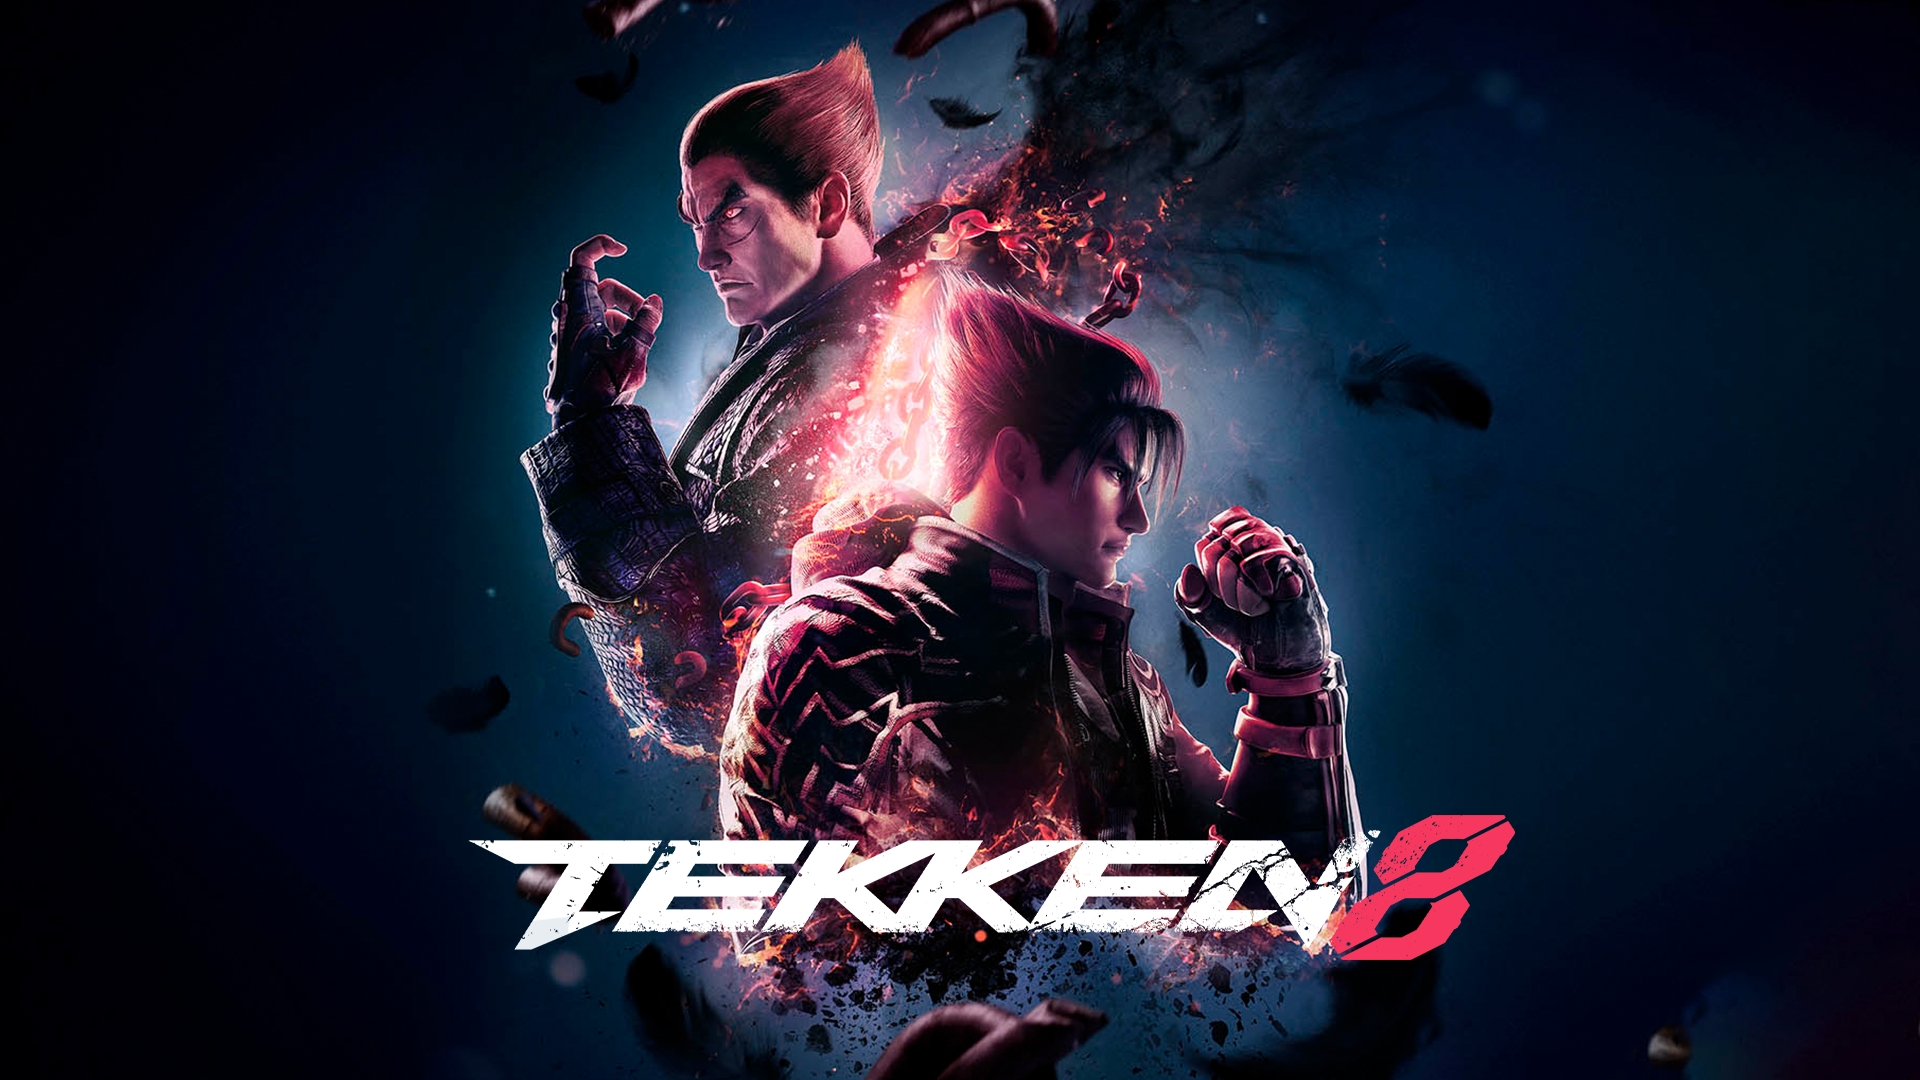 tekken 8 games free download